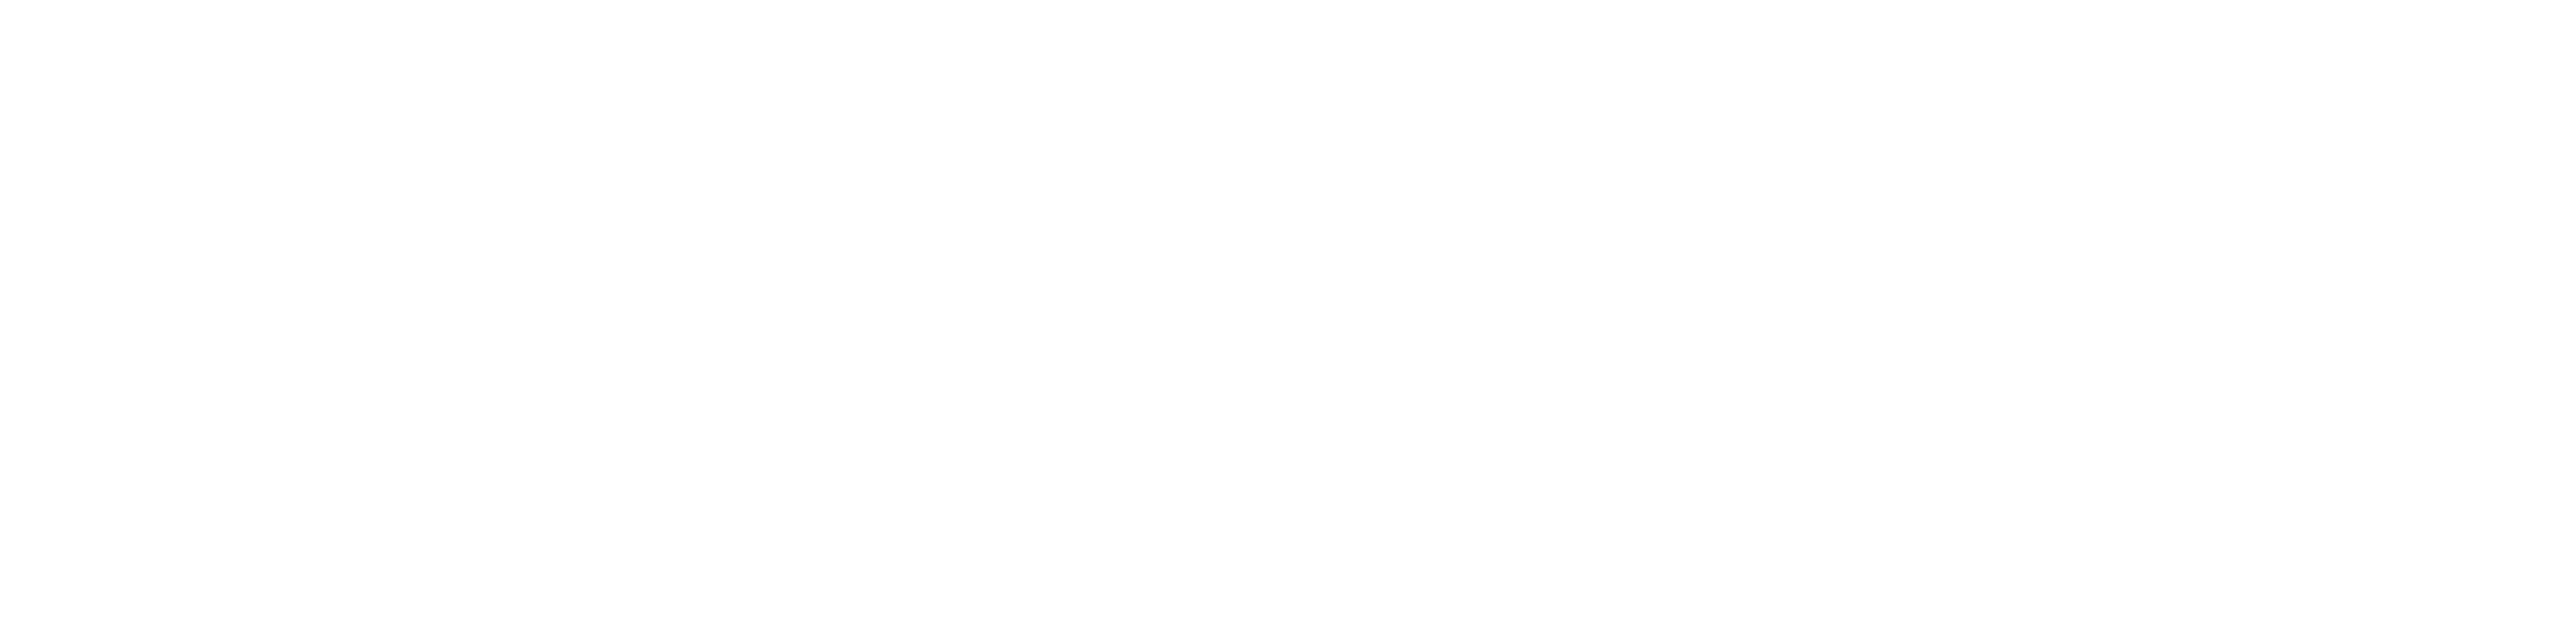 Vestfold og Telemark fylkeskommune - logo